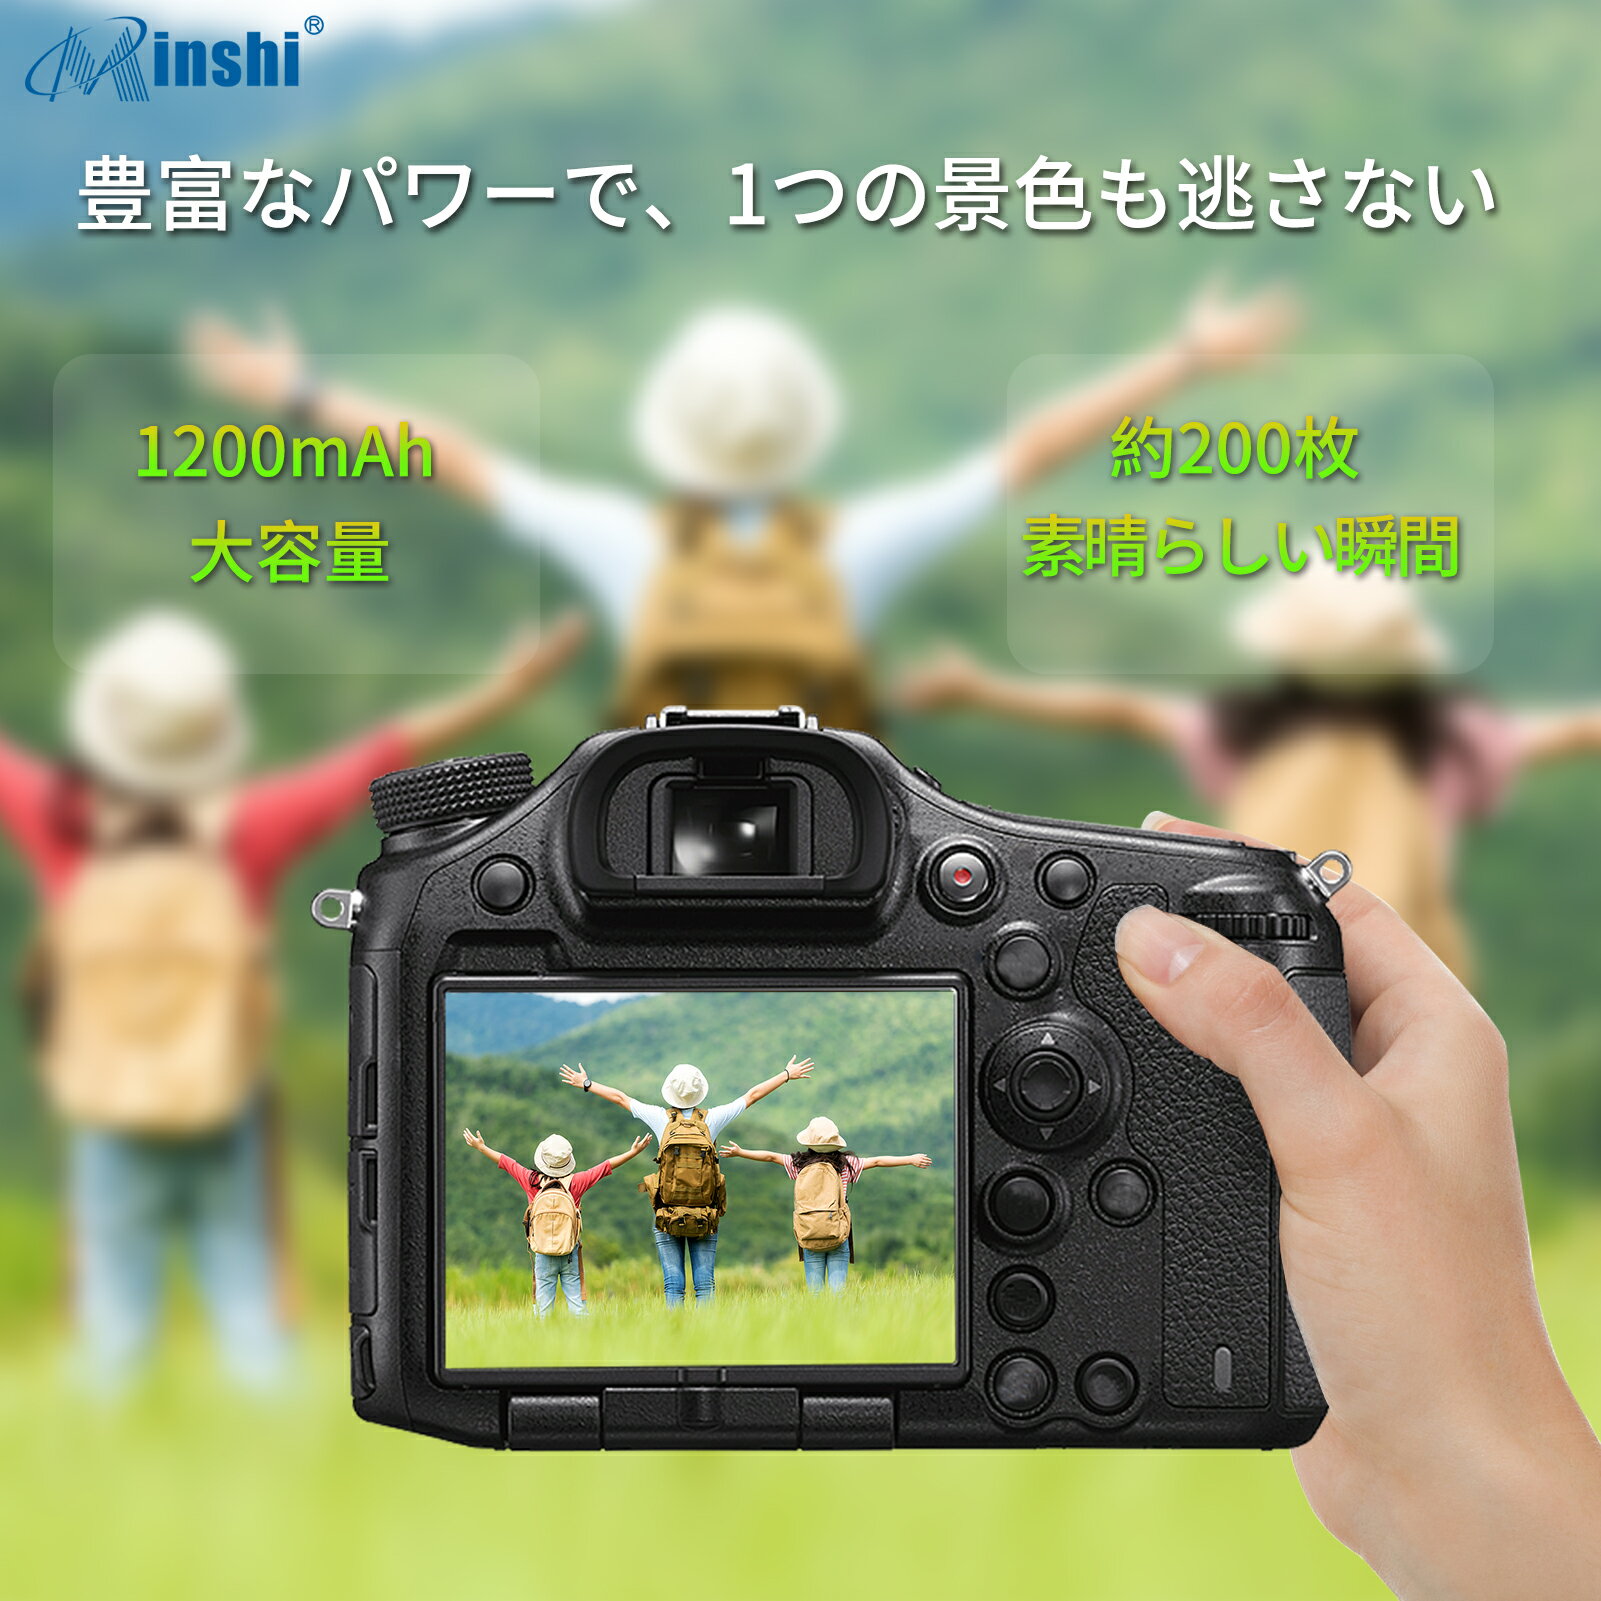 【2個セット】minshi 新品 Casio FinePix JZ700 互換バッテリー 1200mAh 高品質交換用リチャージブル カメラバッテリー リチウムイオンバッテリー デジタルカメラ デジカメ 充電池 PSE認証 1年間保証 予備バッテリー 3